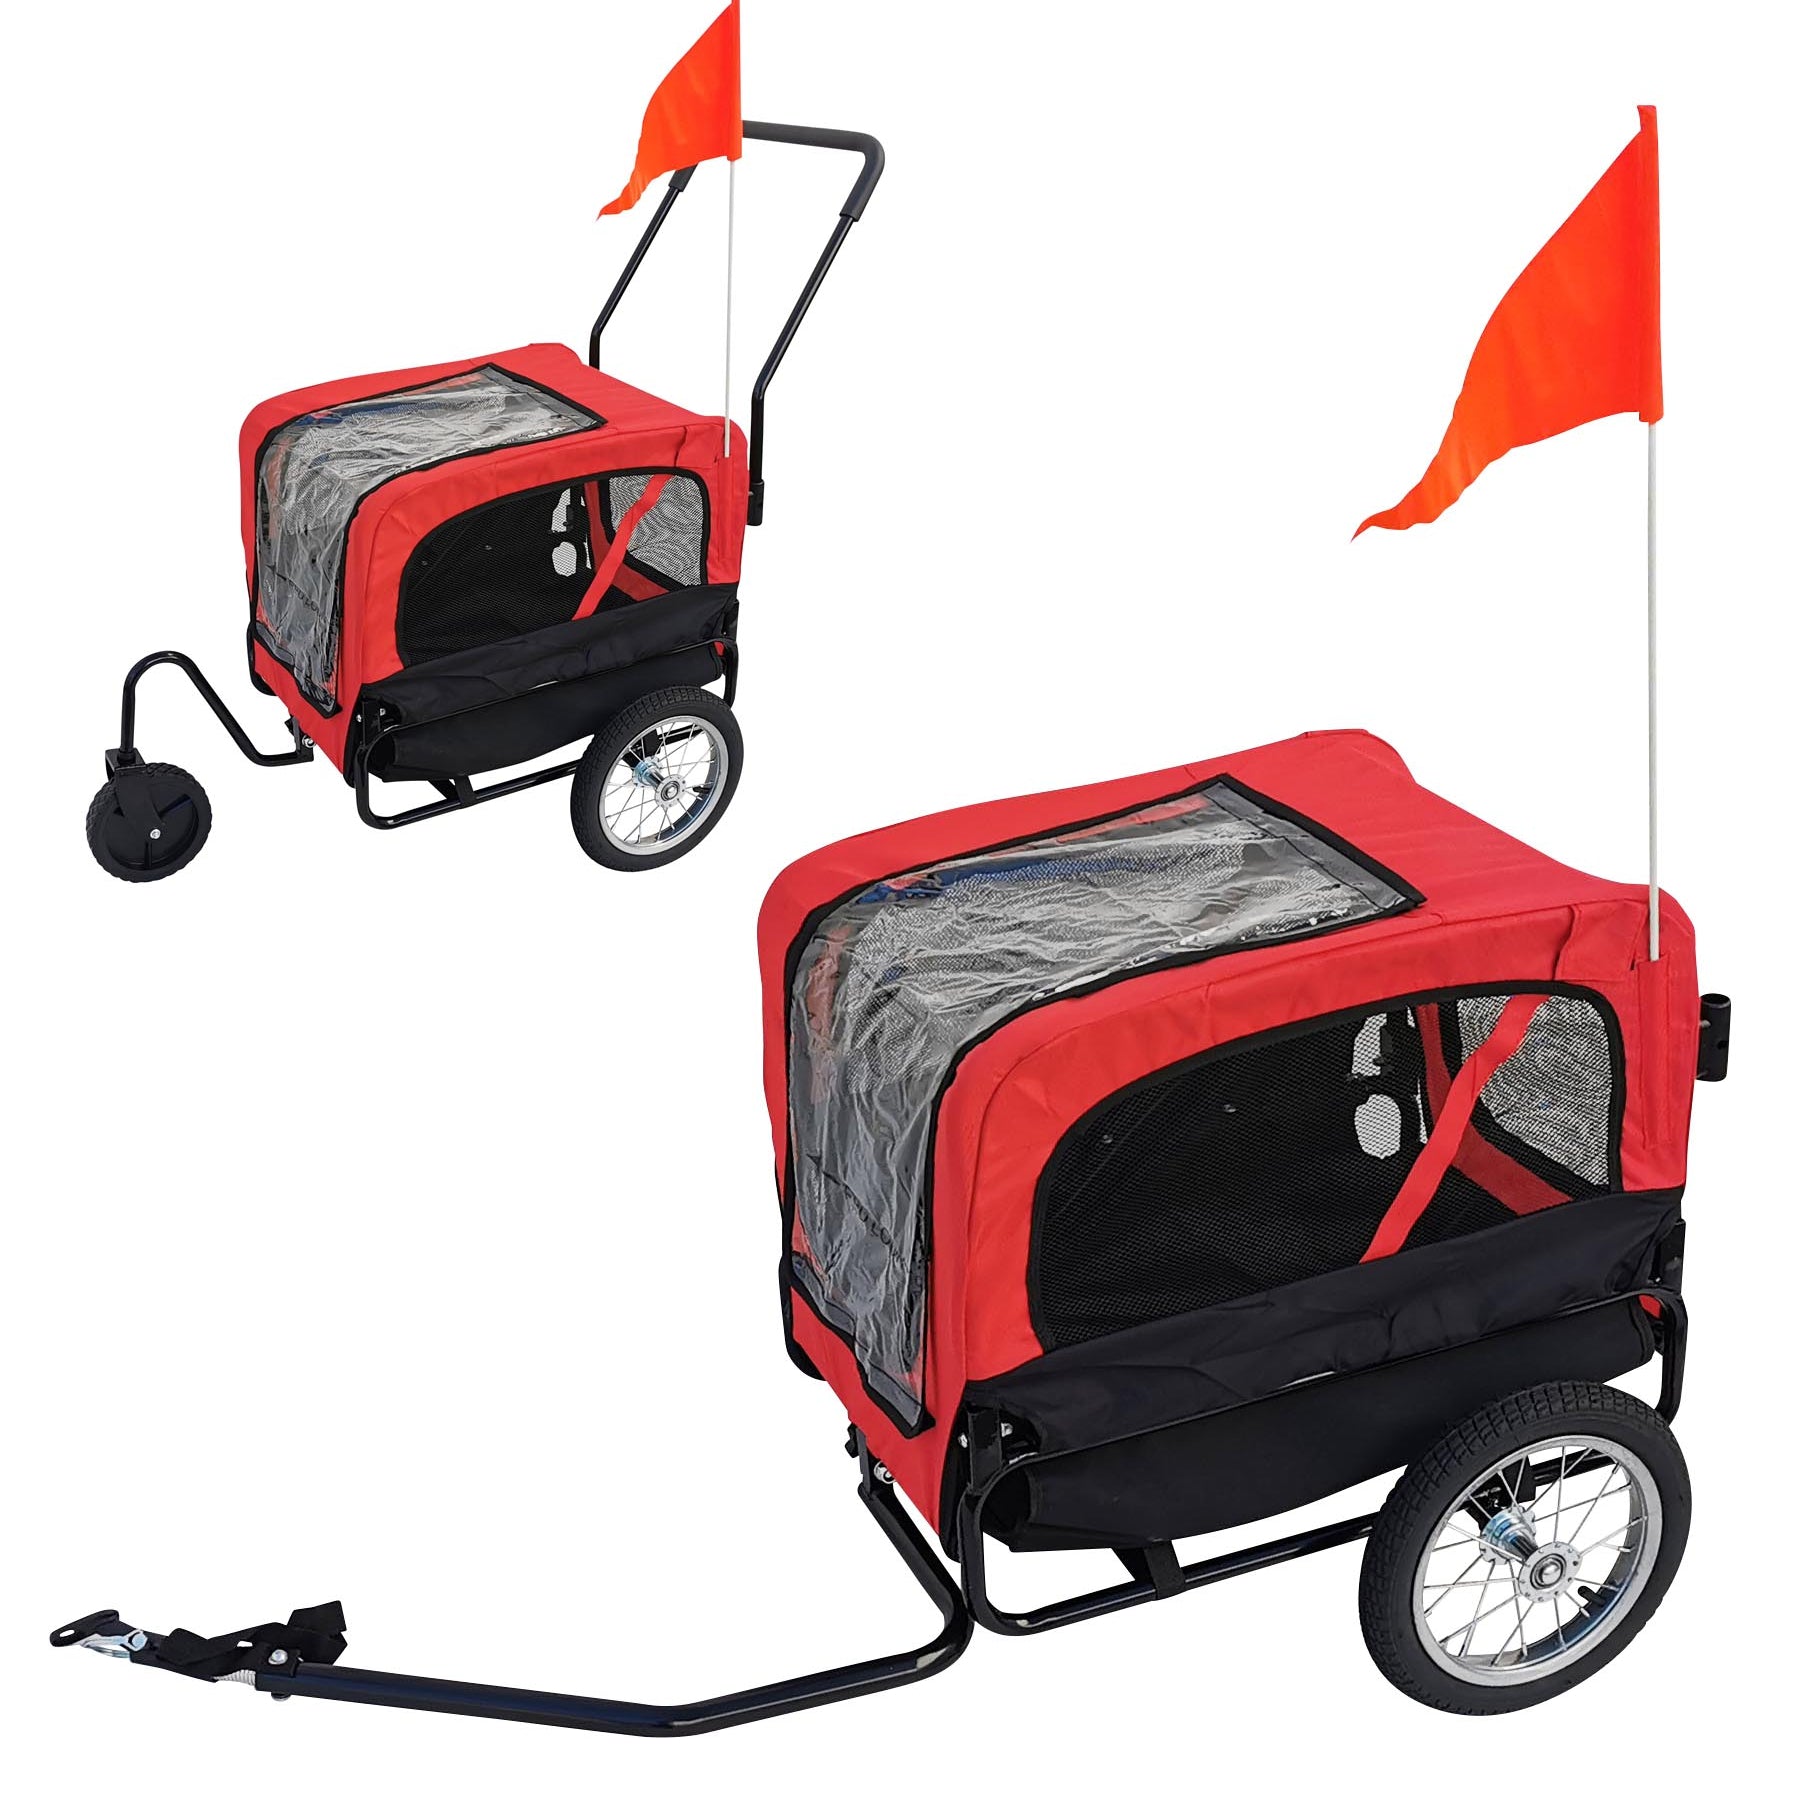 Hundeanhänger Red Loon für Mini Hunde Anhänger rot Jogger Transporter Fahrradanhänger